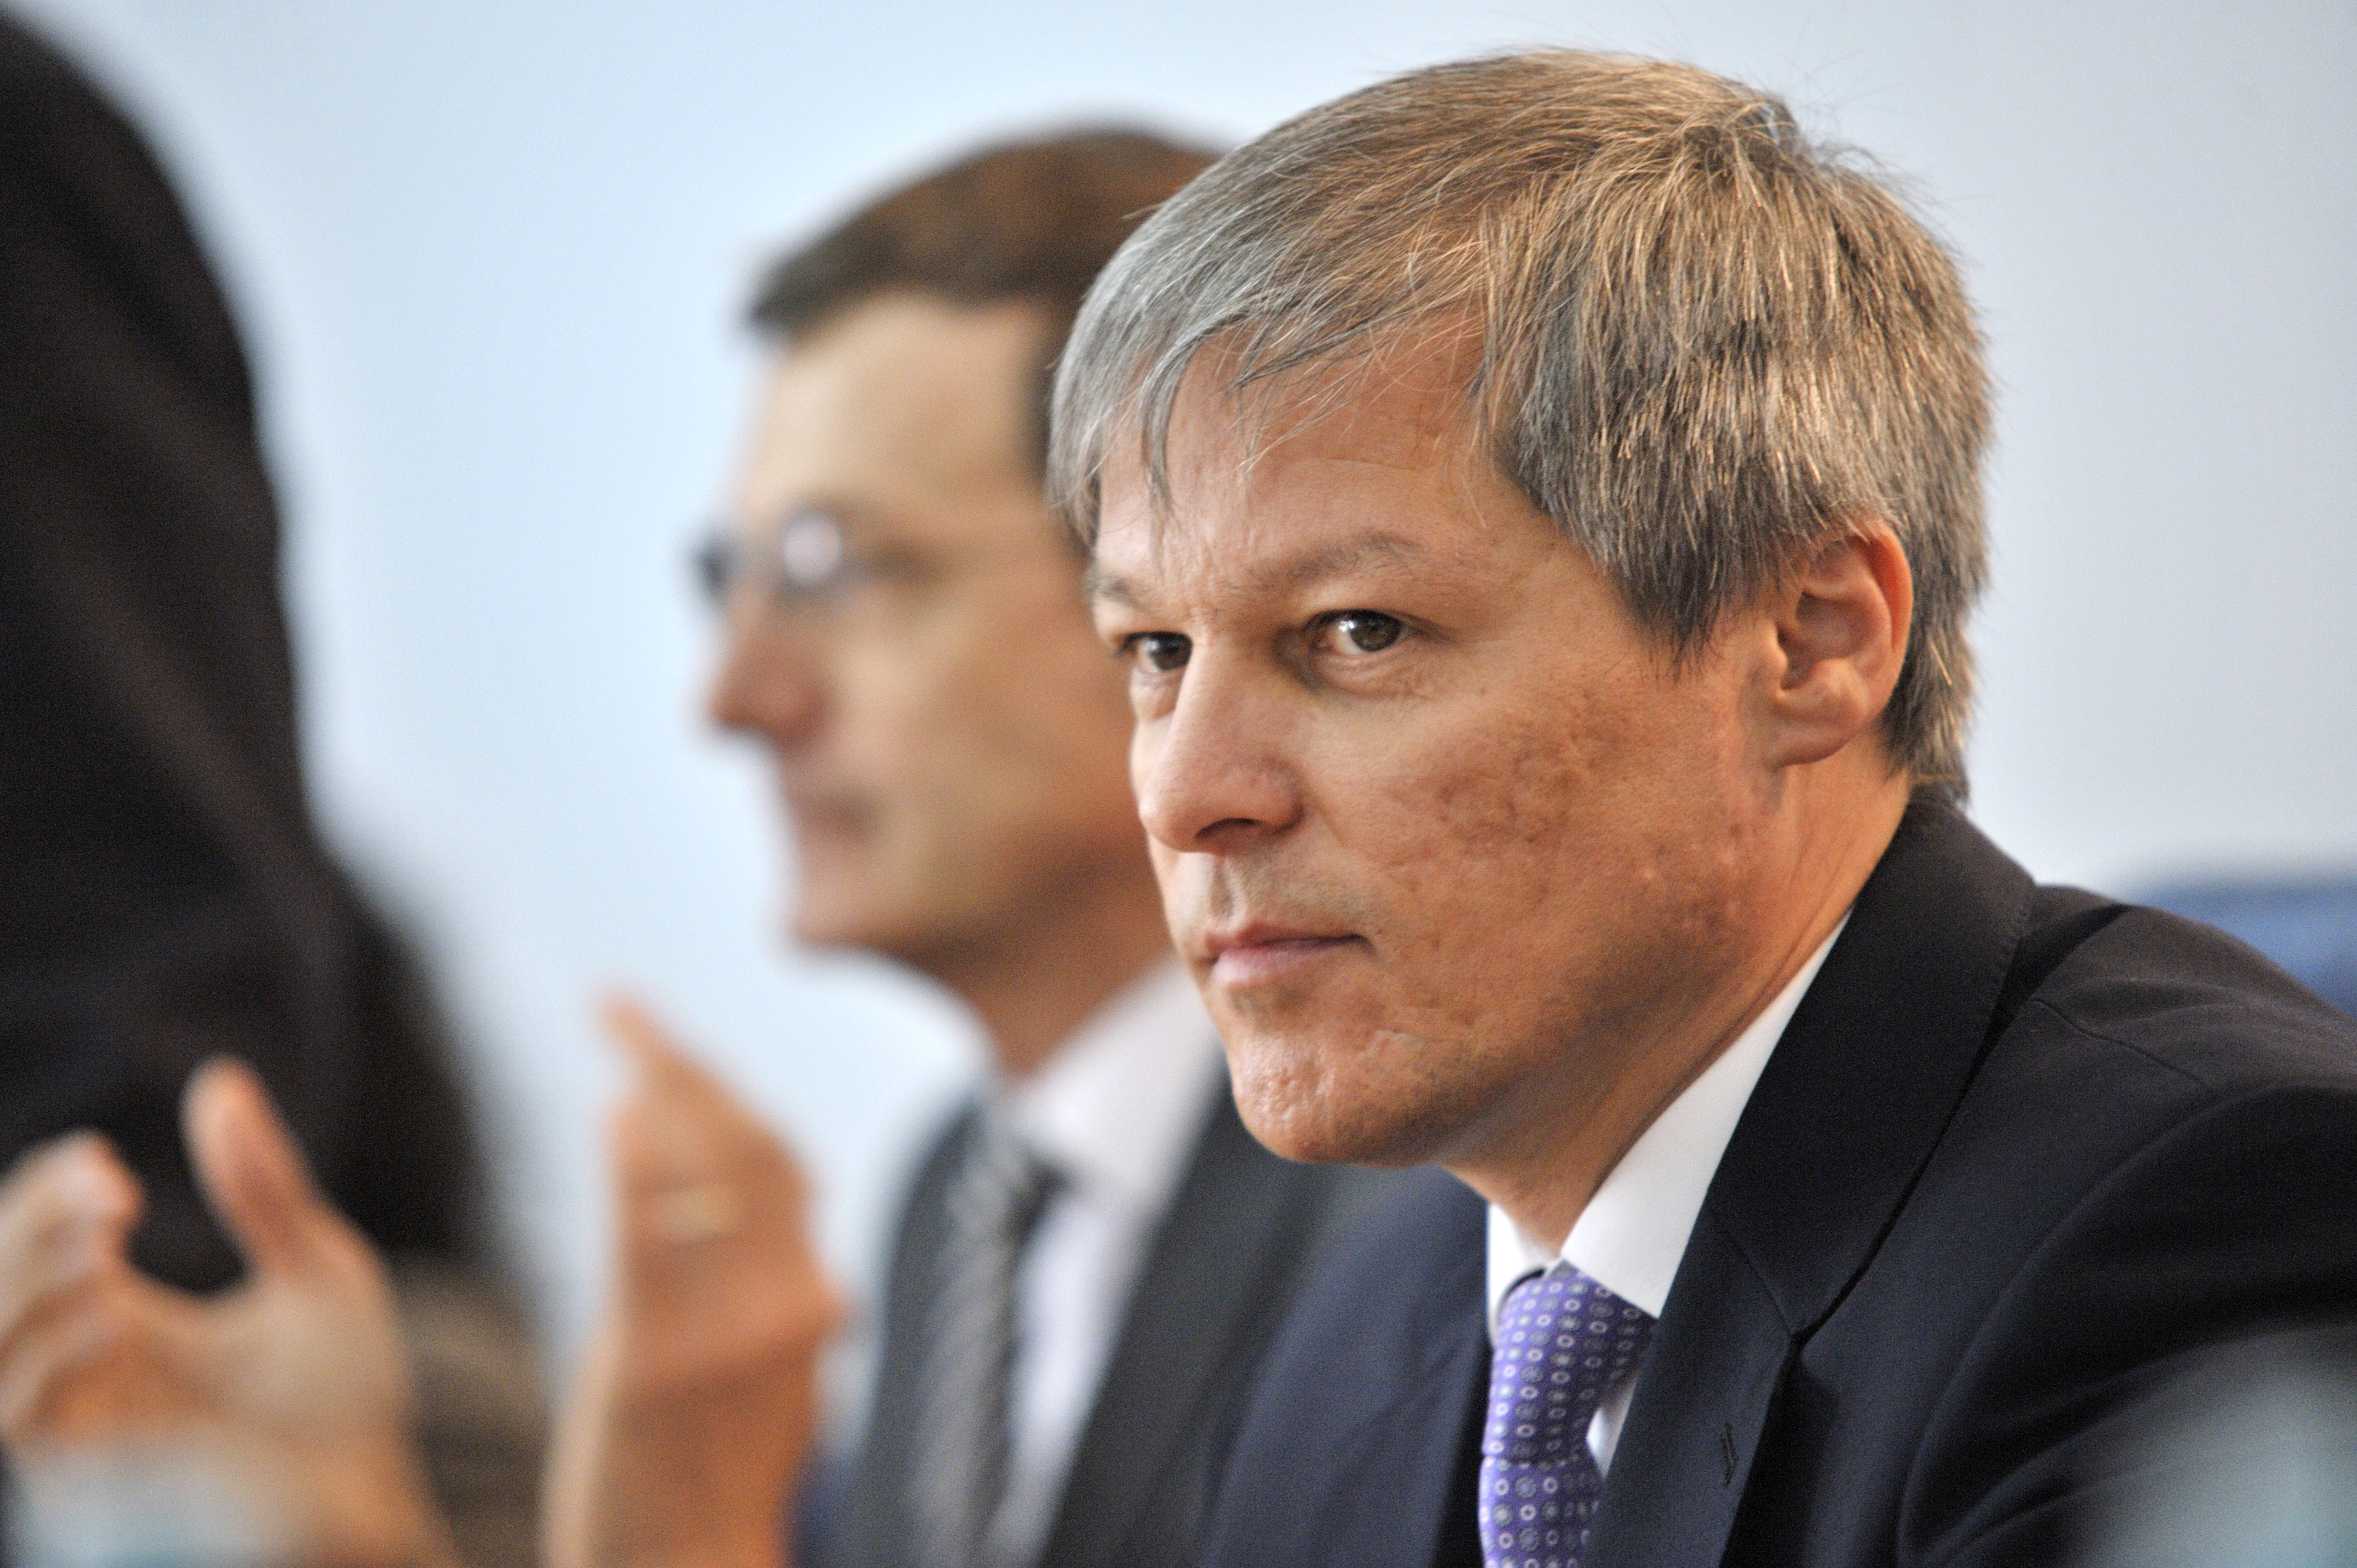 Mutare surpriză pe scena politică. Dacian Cioloş: Candidez pentru şefia grupului Înnoim Europa, dar rămân activ şi în politica din ţară